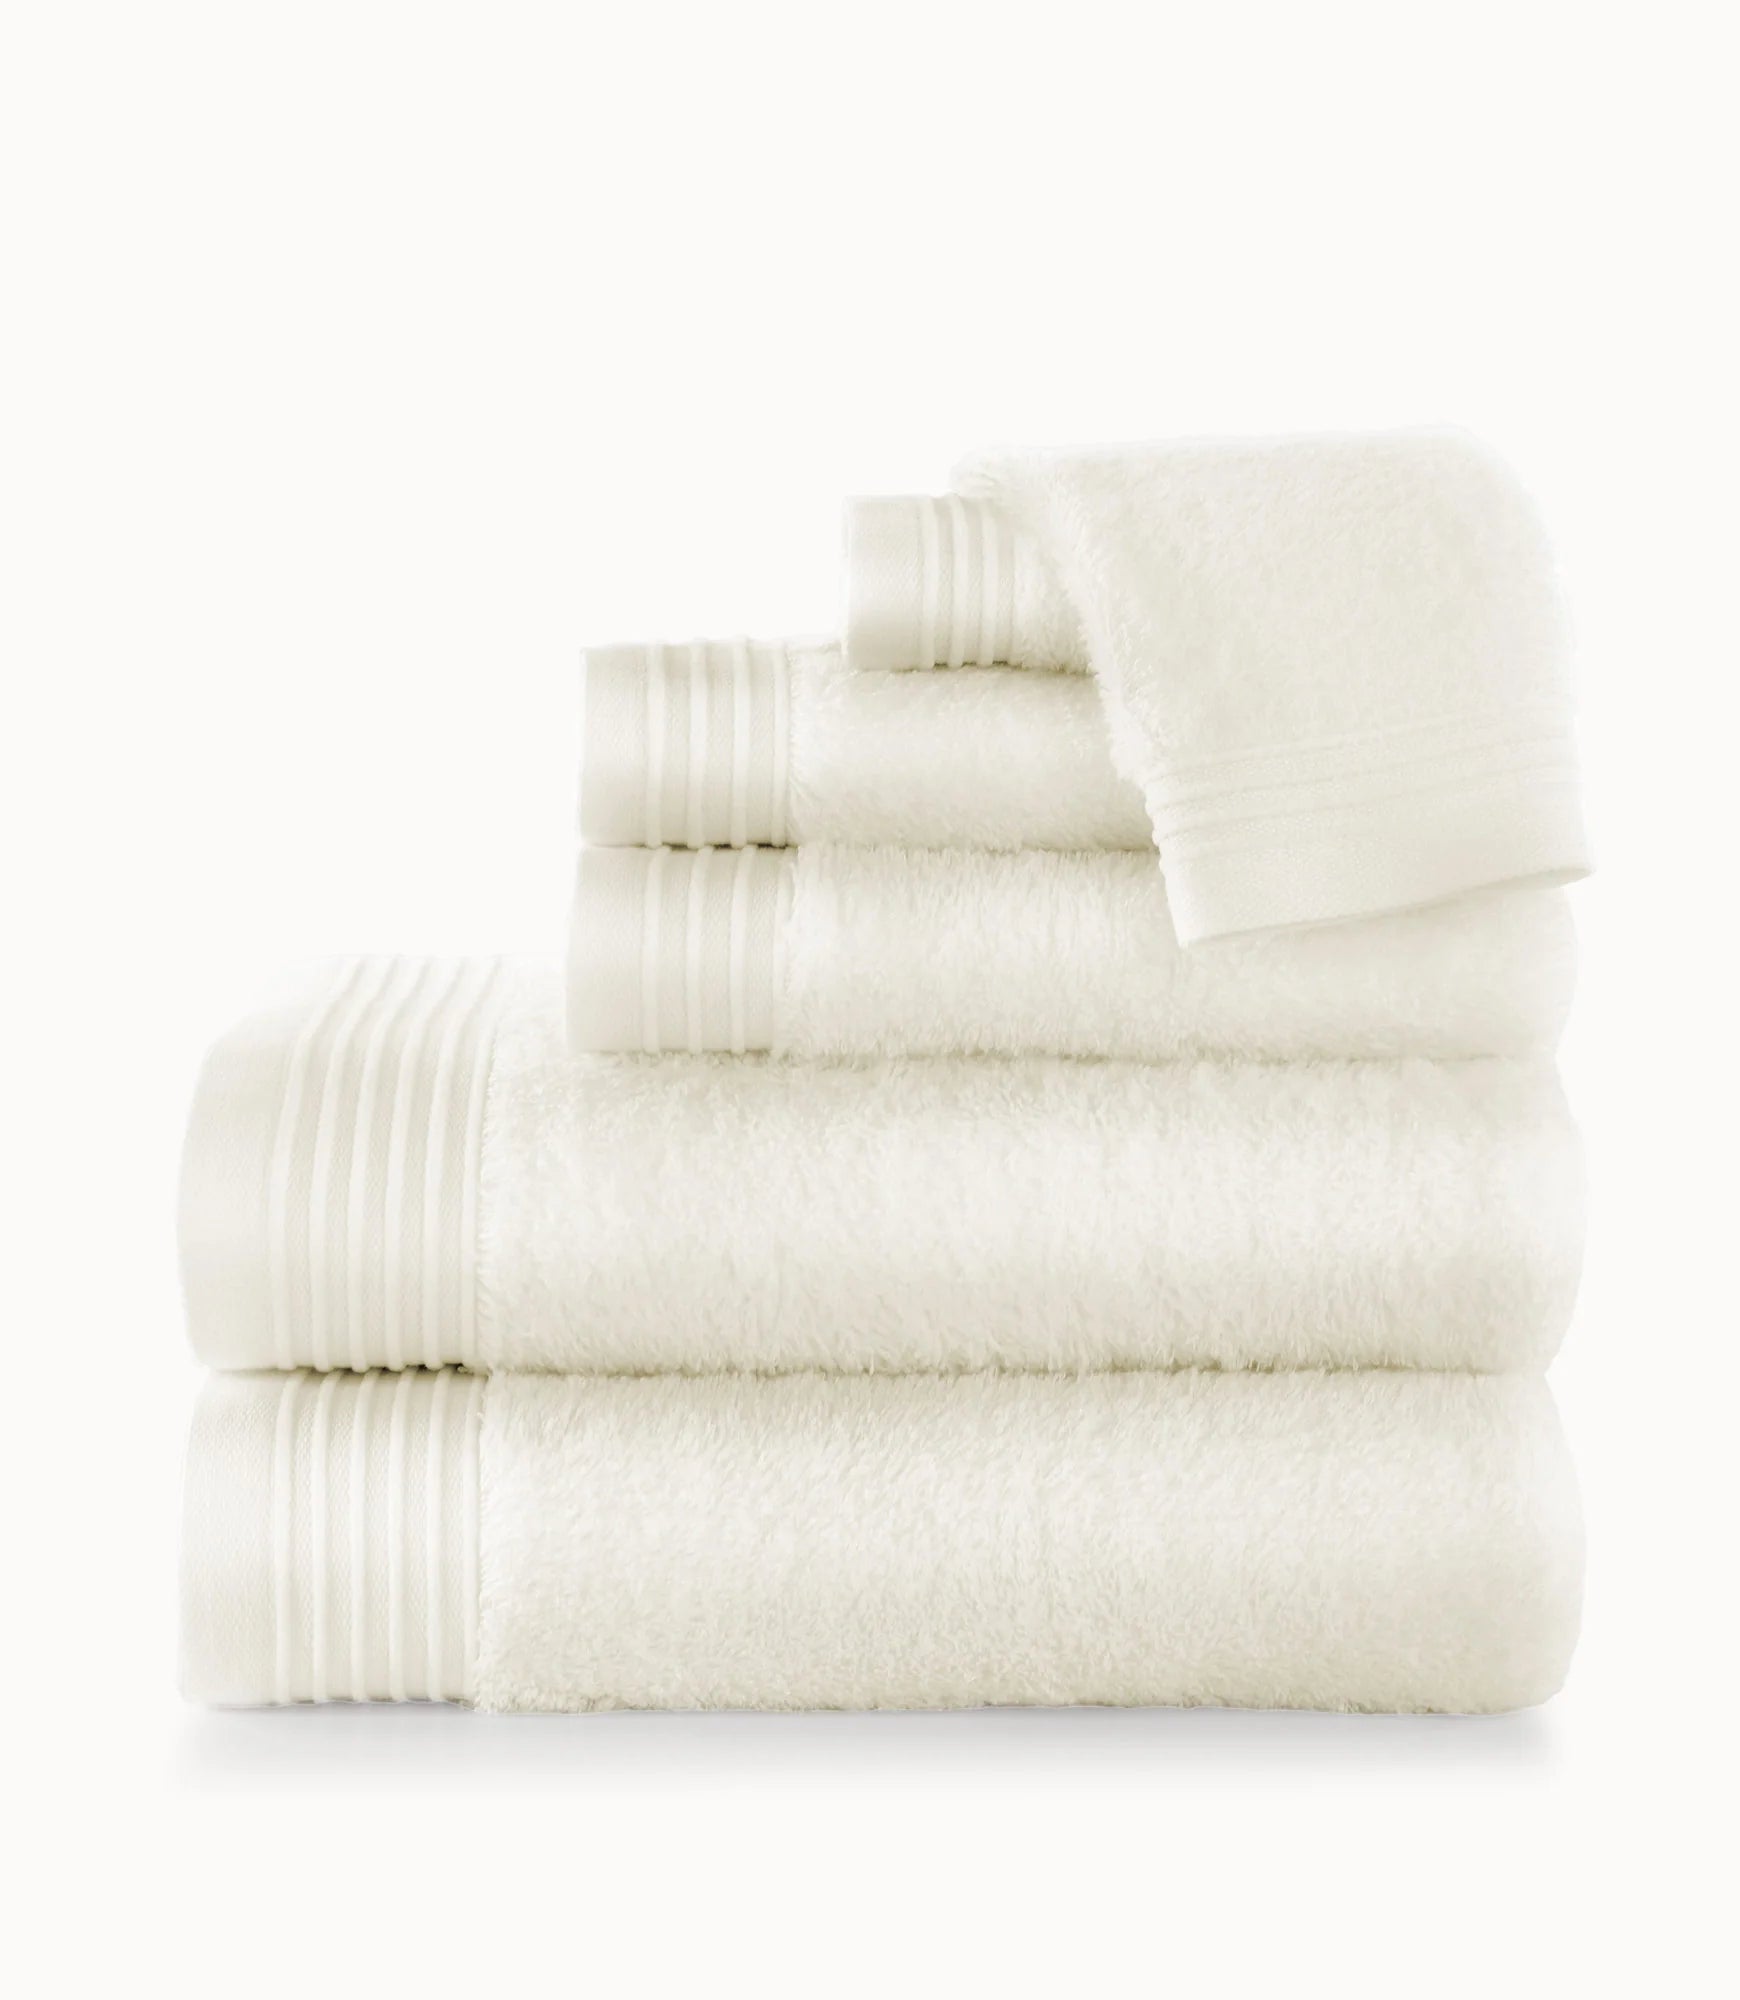 Bamboo Bath Towel